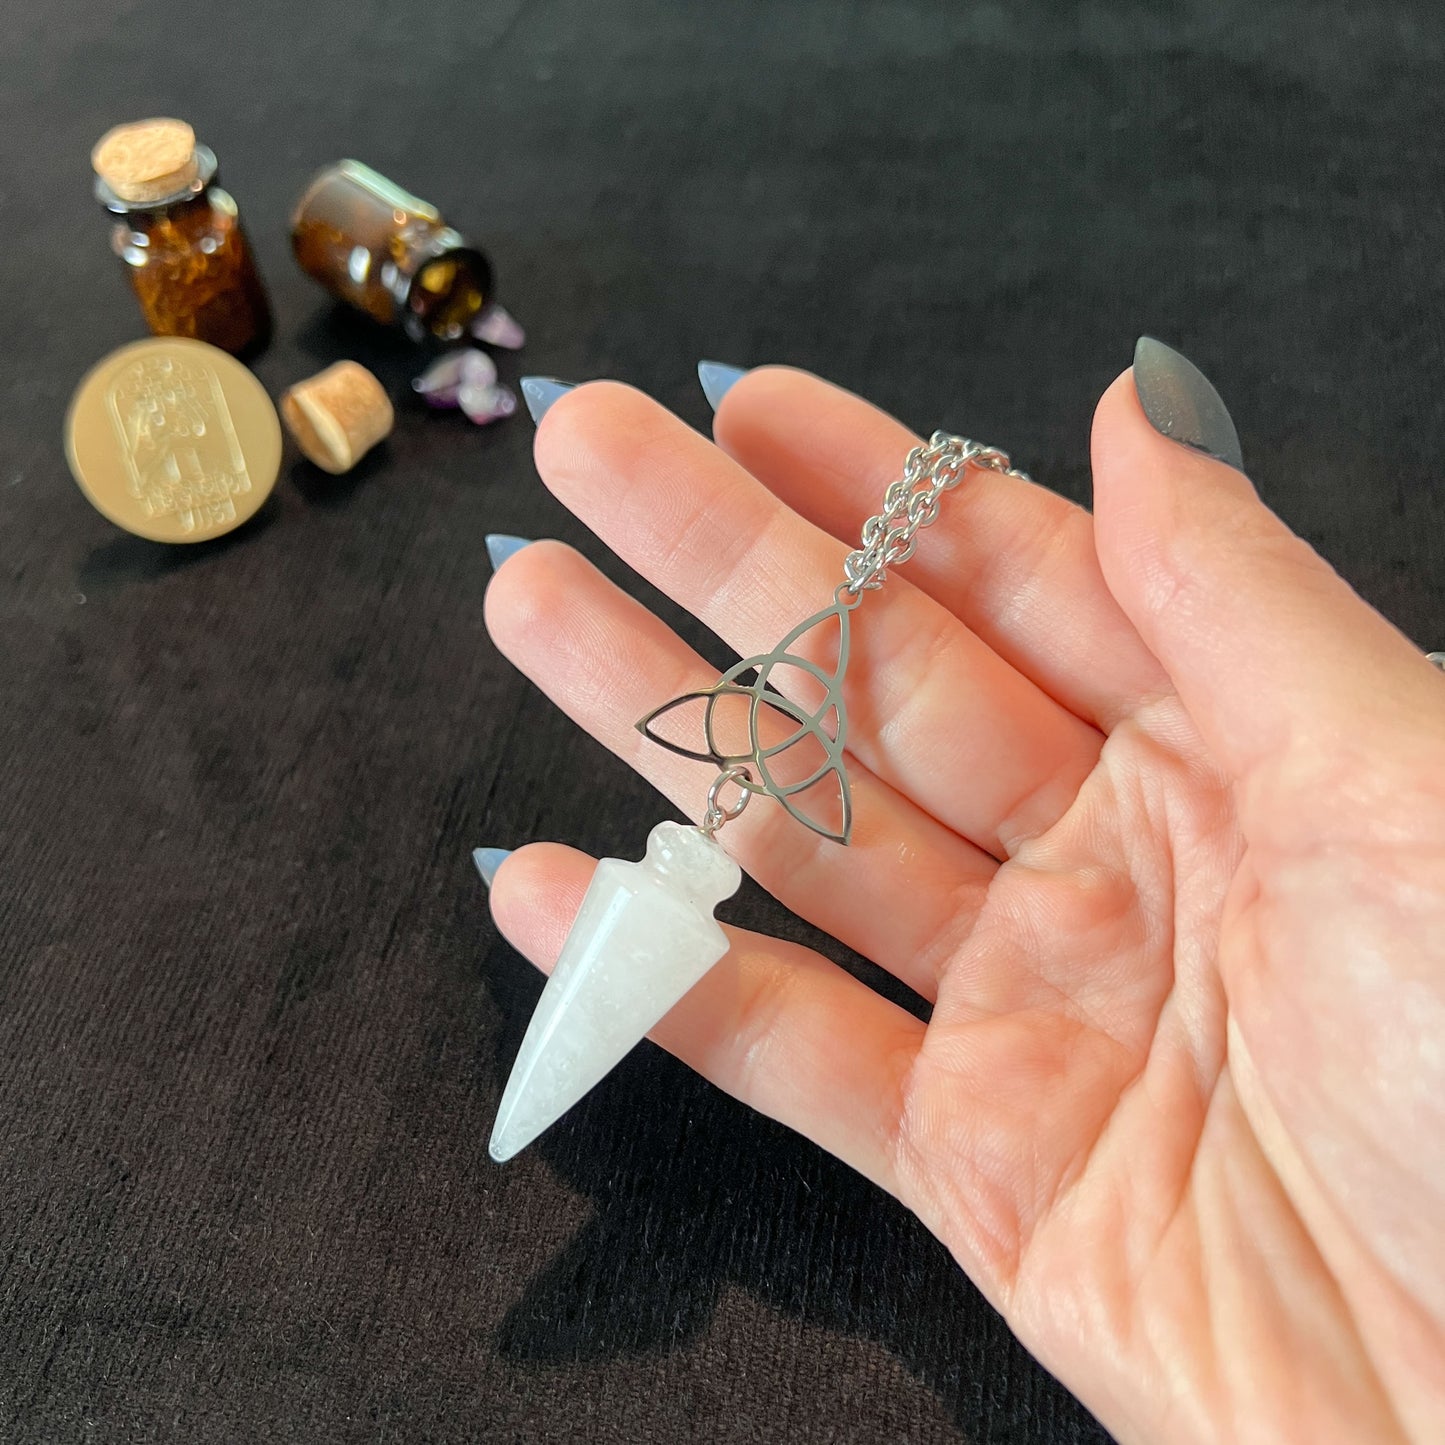 Clear quartz and triquetra Celtic knot pendulum necklace, stainless steel Baguette Magick